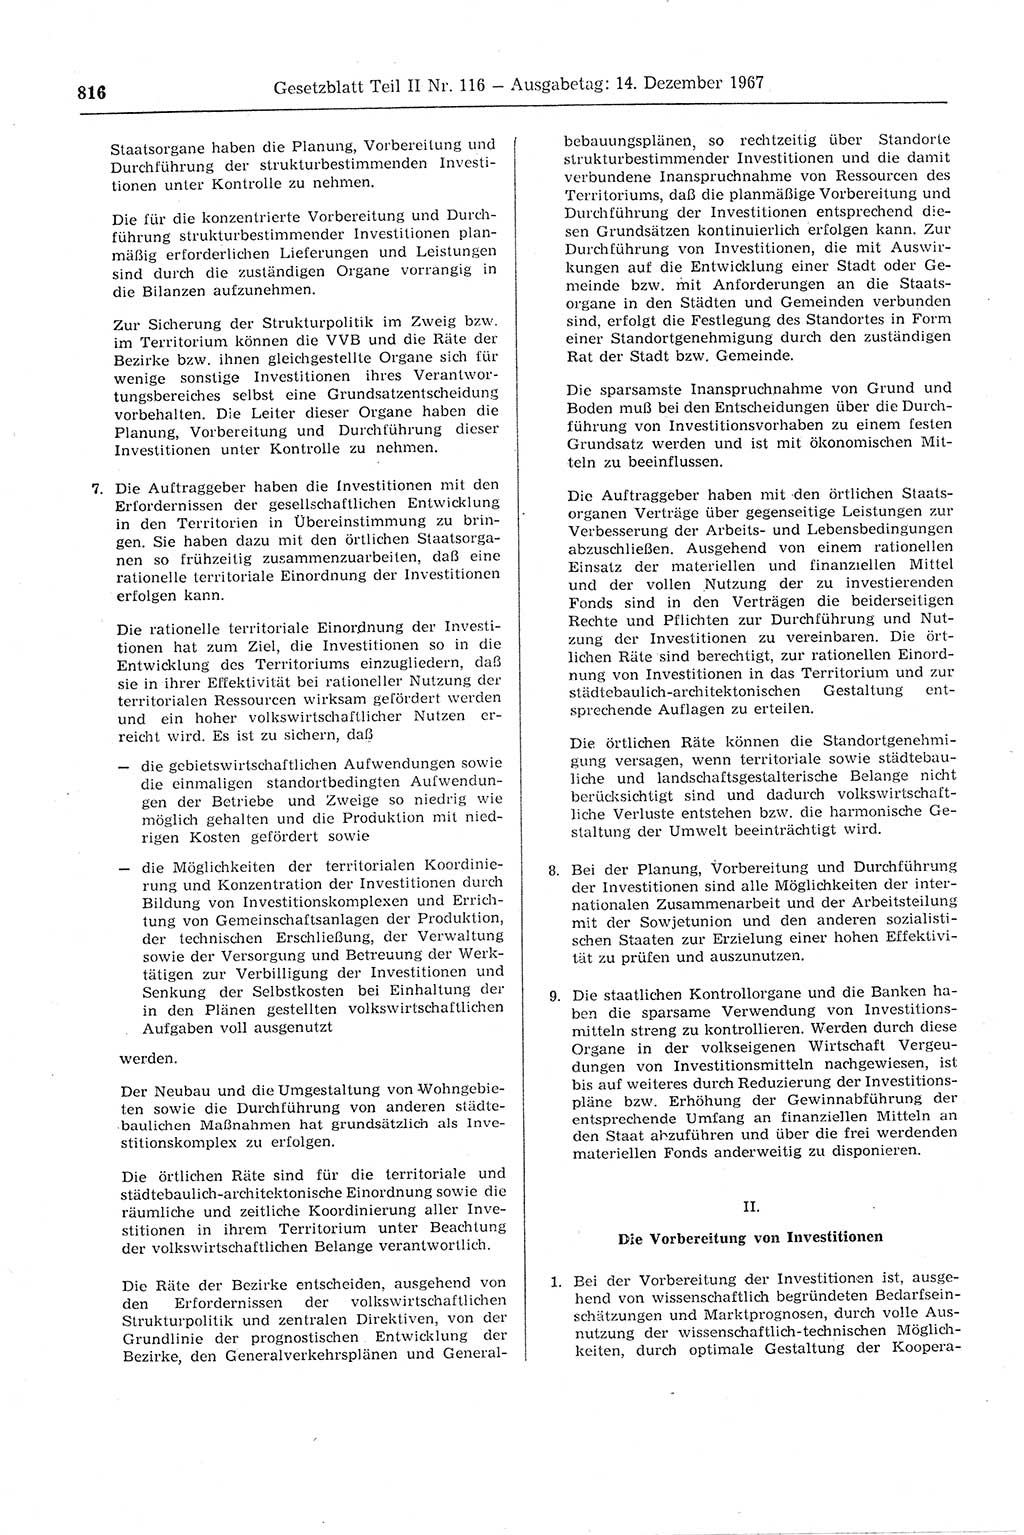 Gesetzblatt (GBl.) der Deutschen Demokratischen Republik (DDR) Teil ⅠⅠ 1967, Seite 816 (GBl. DDR ⅠⅠ 1967, S. 816)